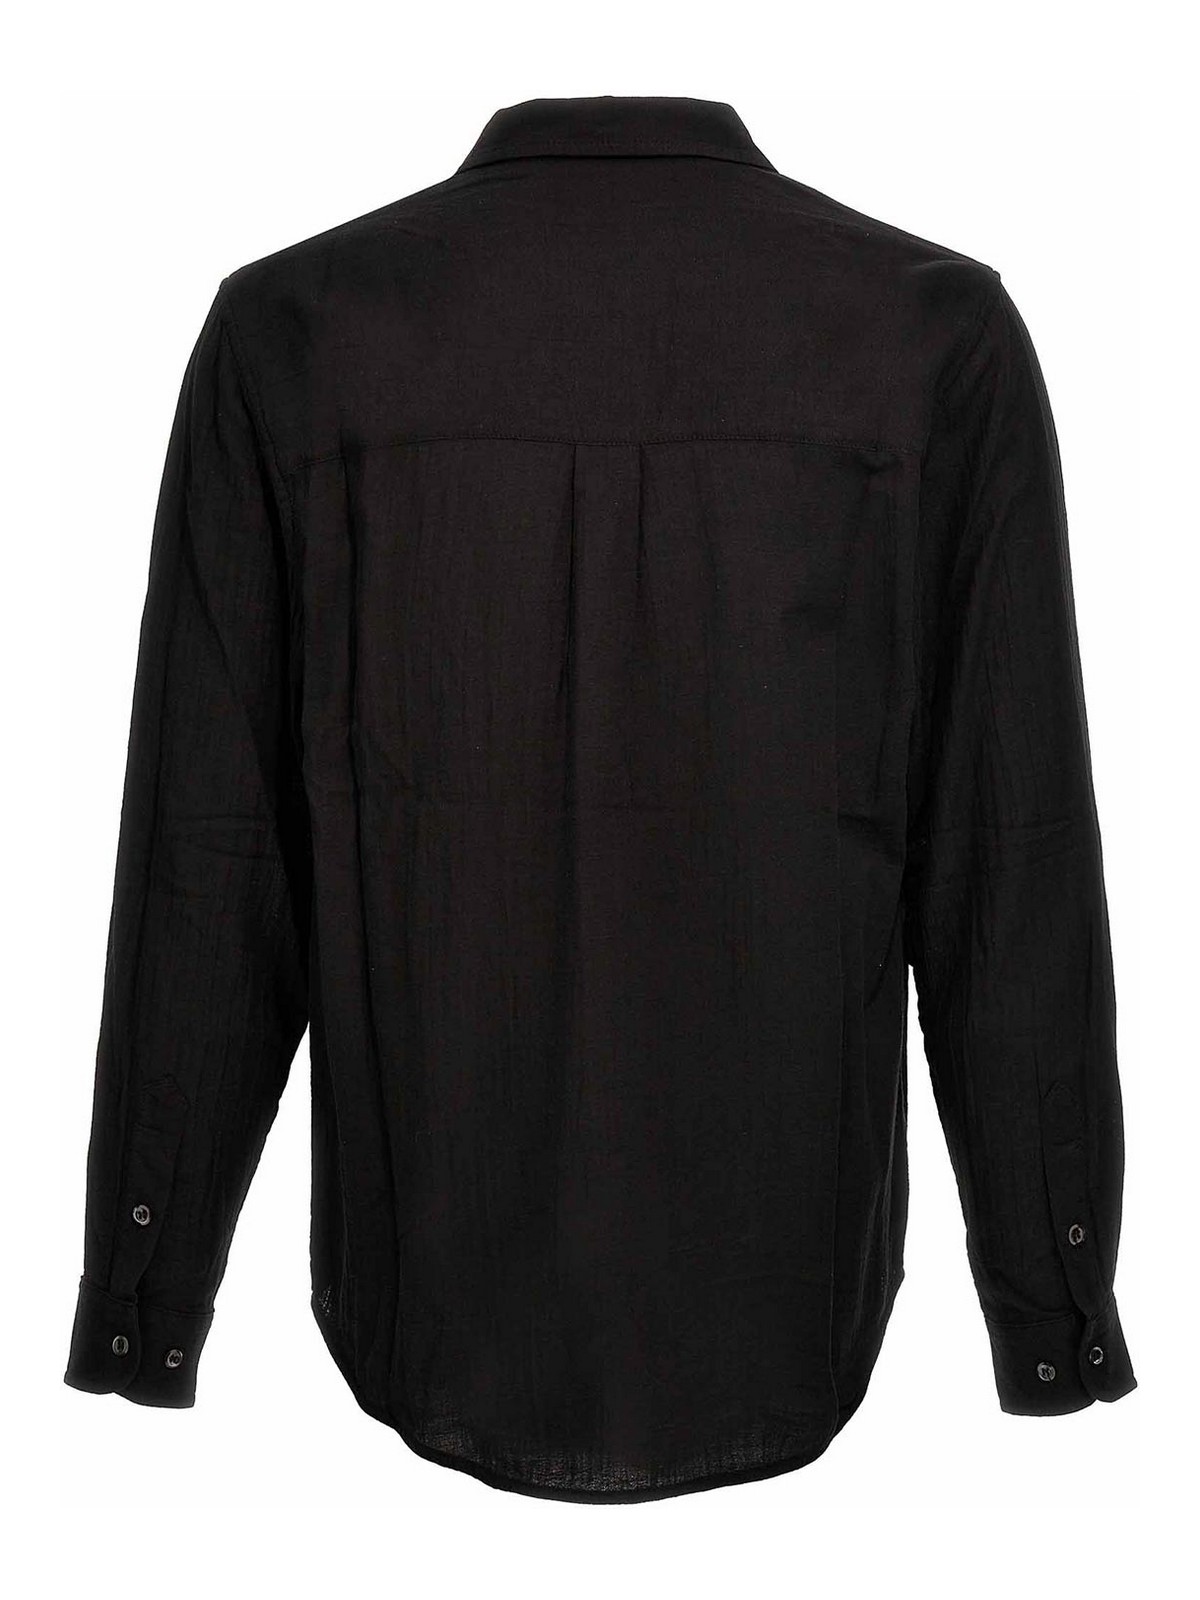 Shop Séfr Camisa - Negro In Black